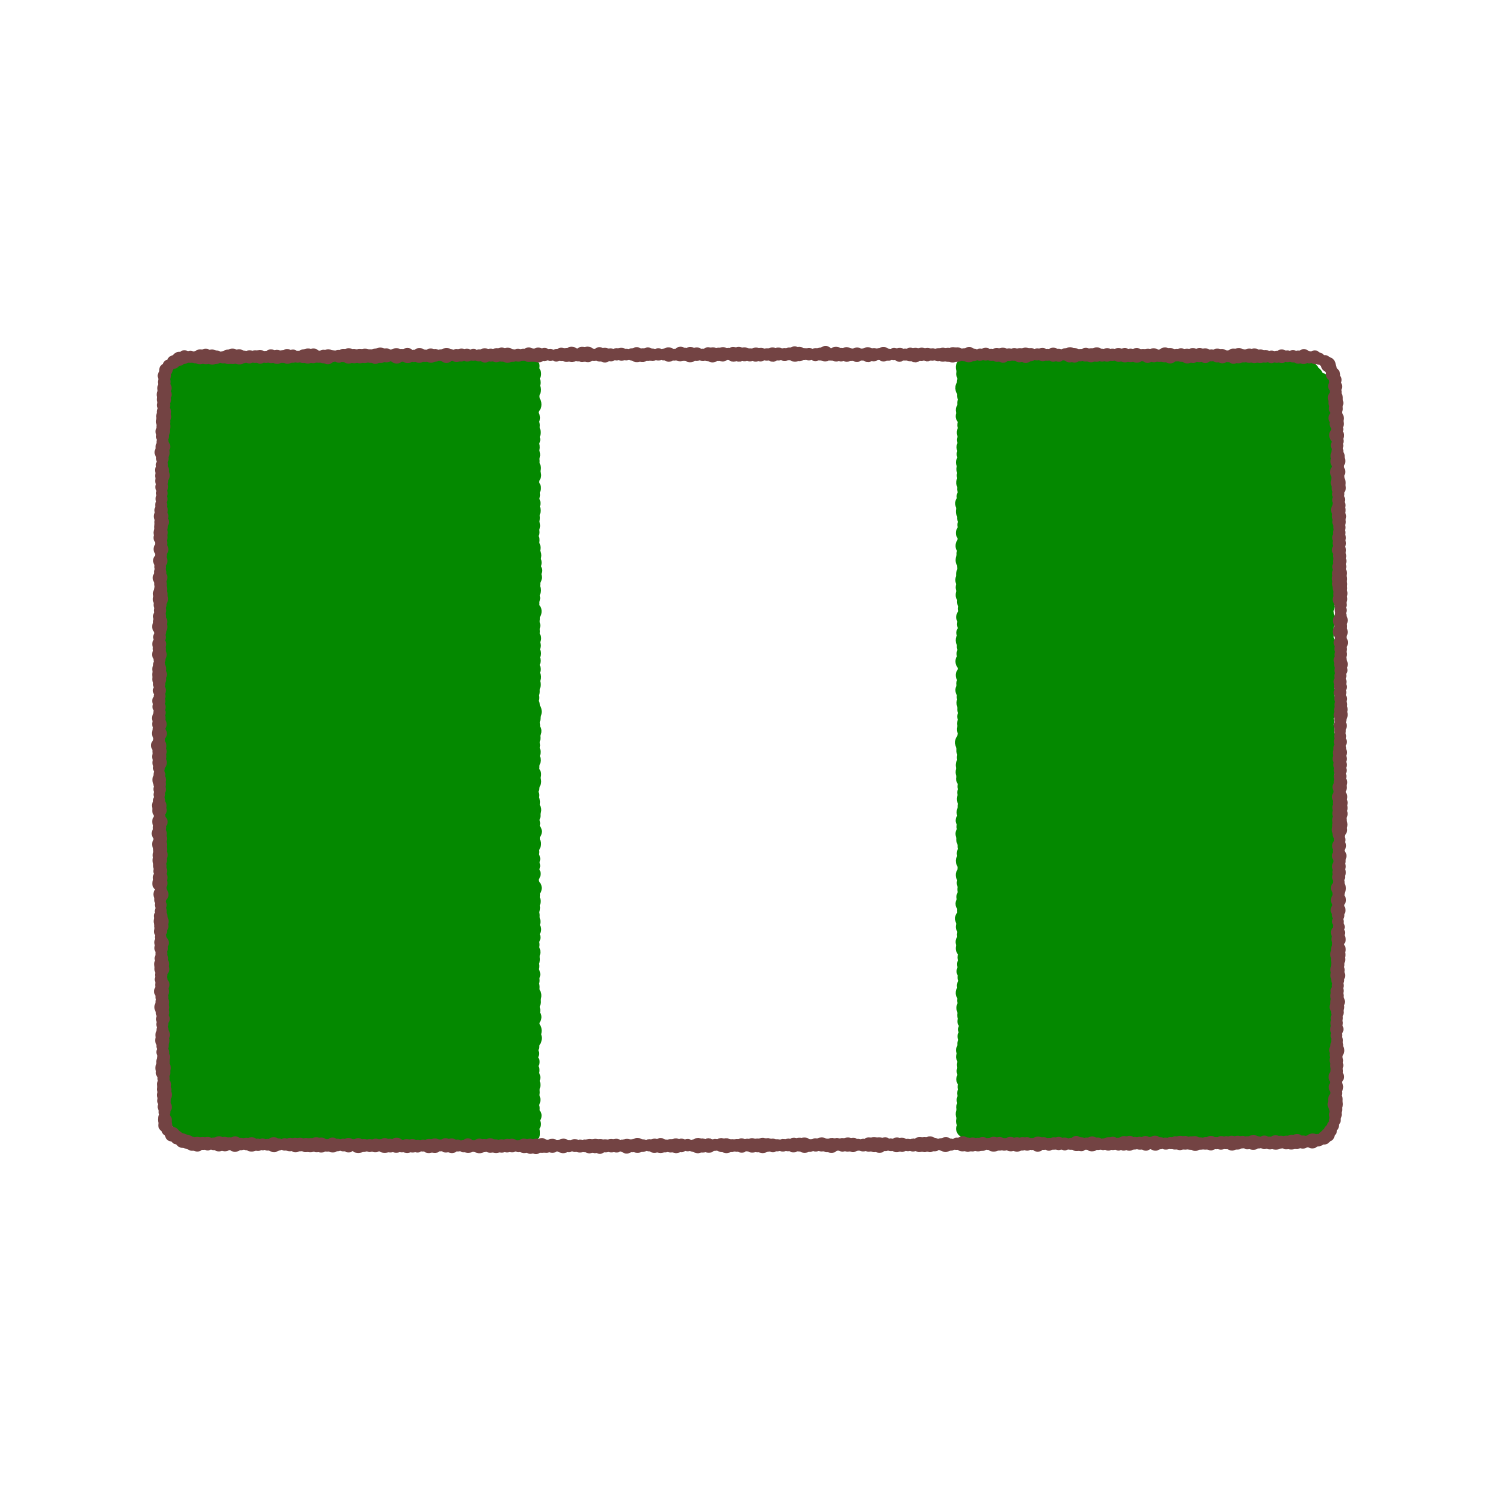 ナイジェリア国旗のイラスト